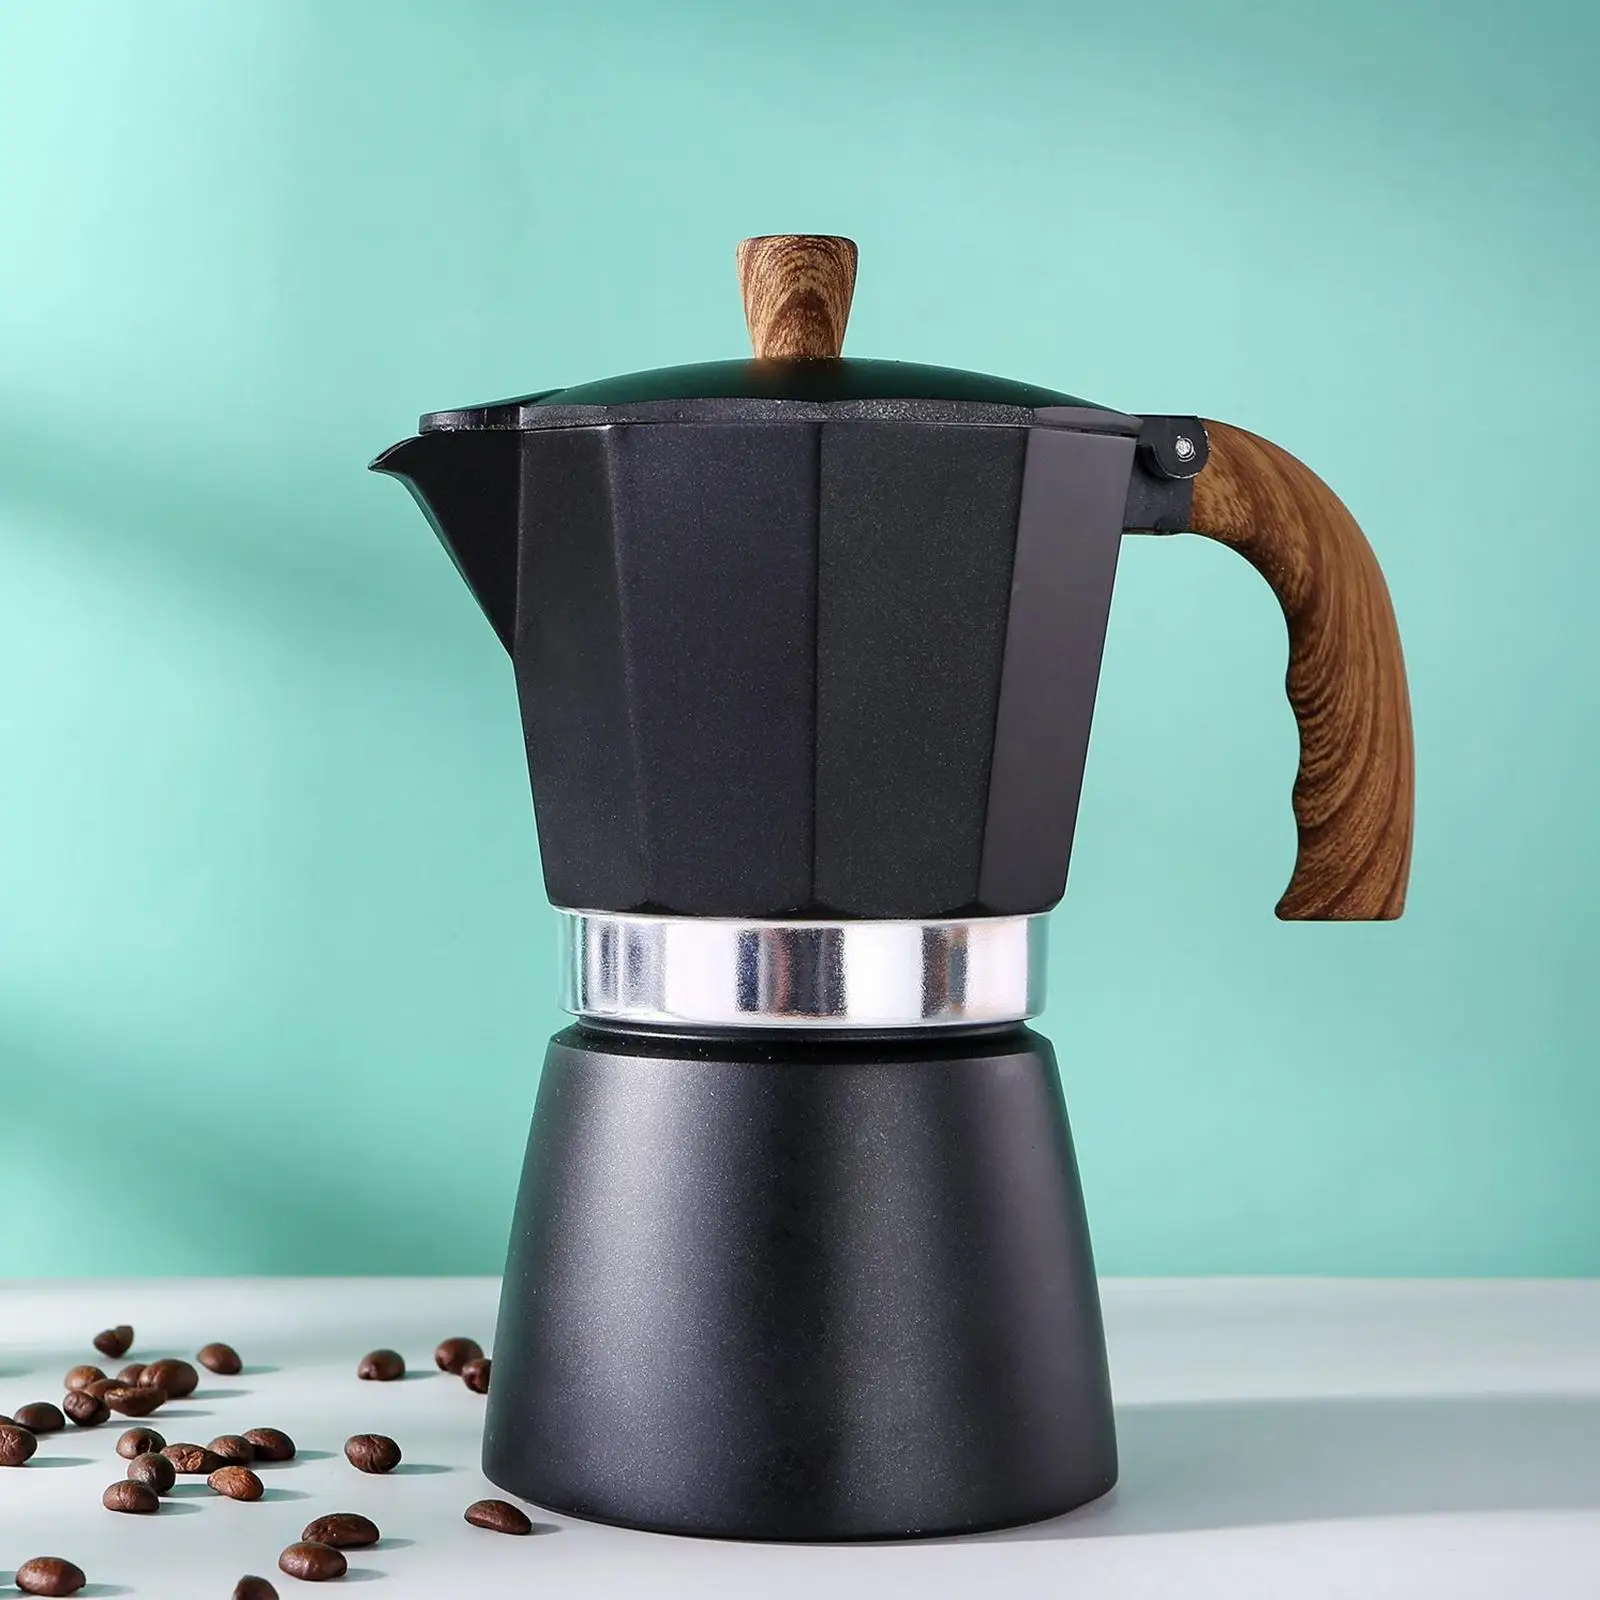 Herd Espresso Maker Moka Kaffee Topf für Gas oder Elektrische Keramik Herd